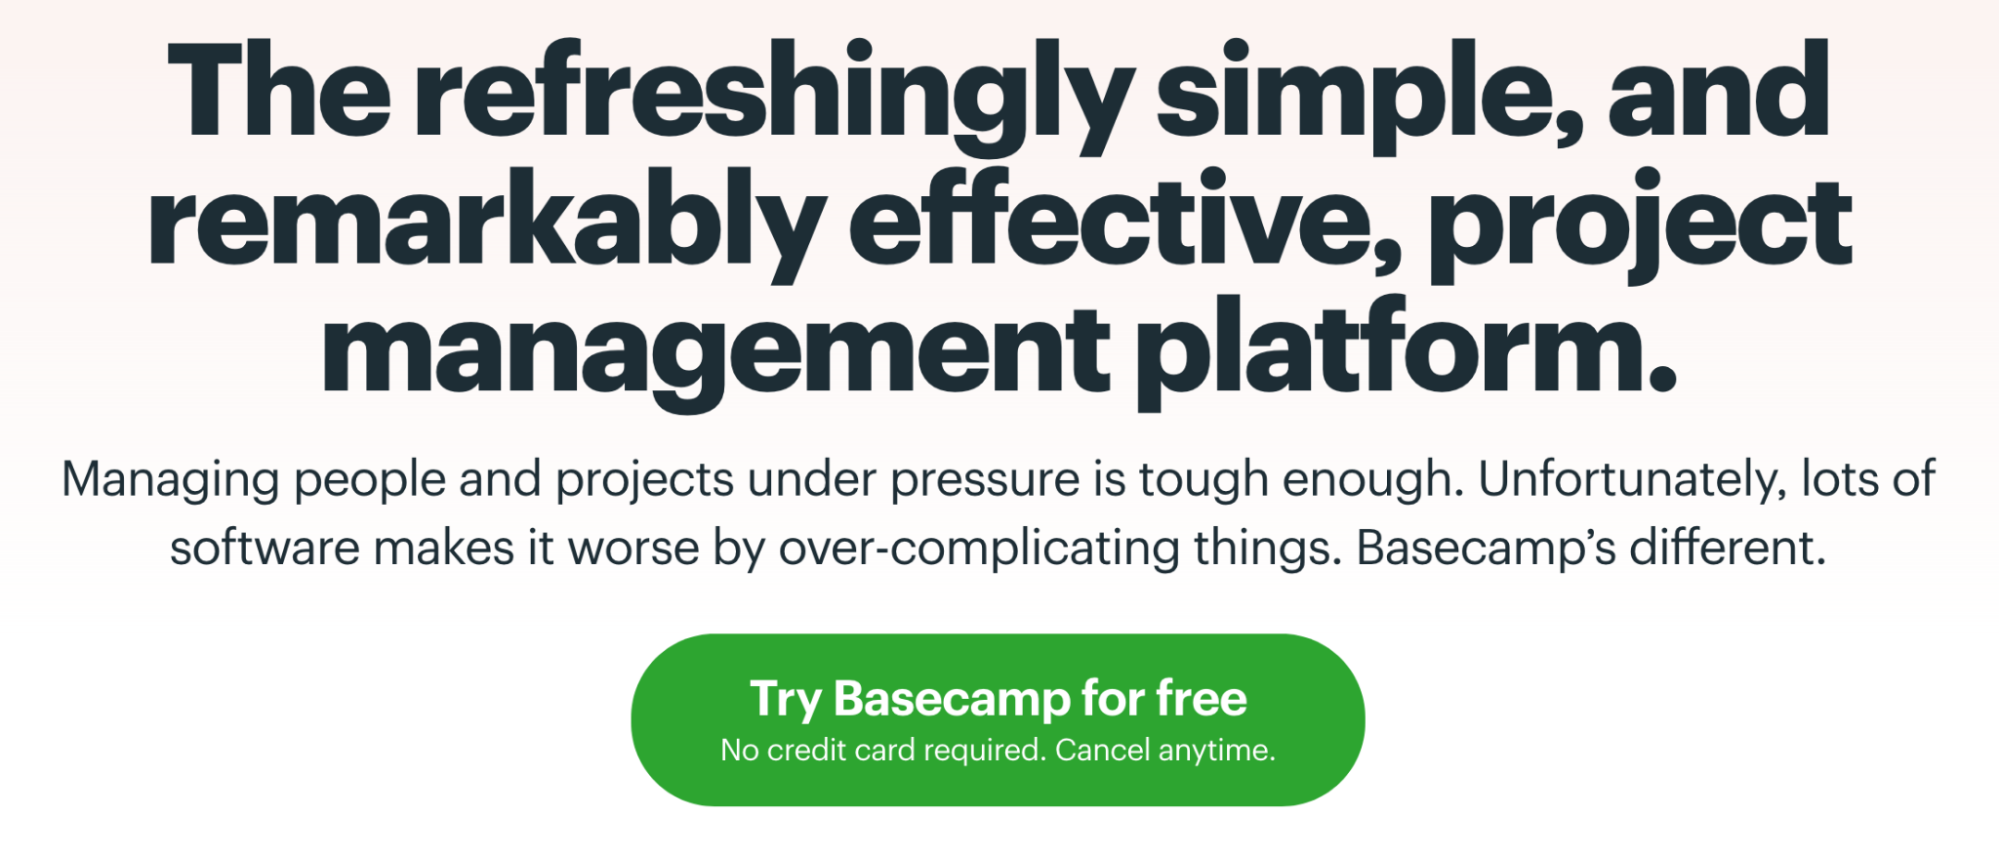 Este exemplo mostra o exemplo de botão de chamada para ação do Basecamp